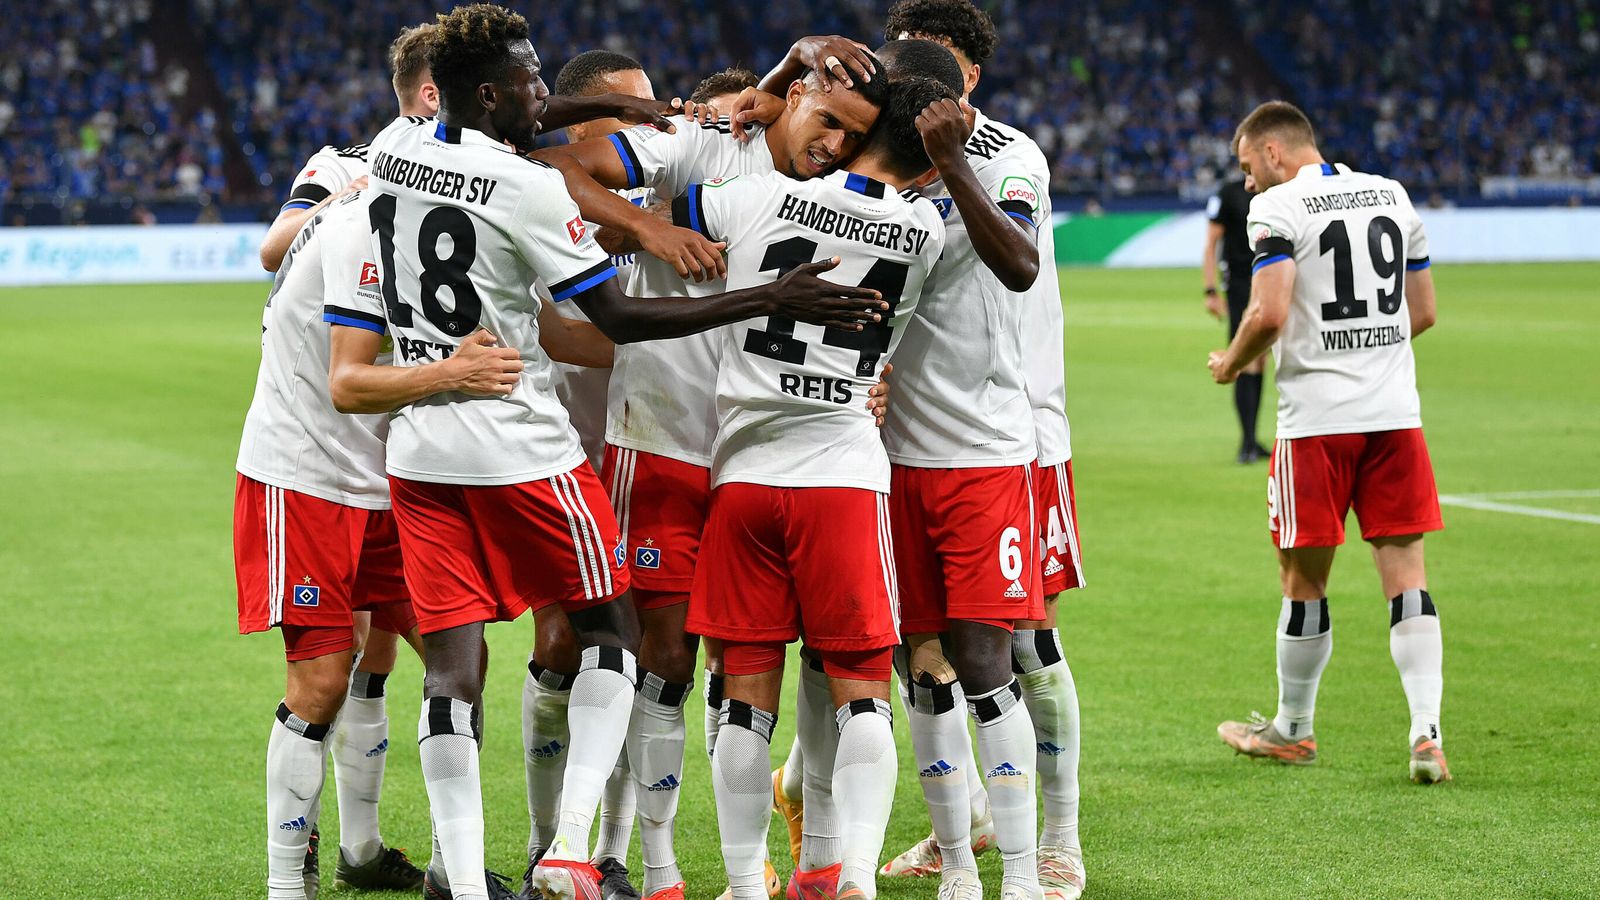 Hamburger SV News: Trotz mäßigem Start - der HSV scheint sich zu finden, Fußball News